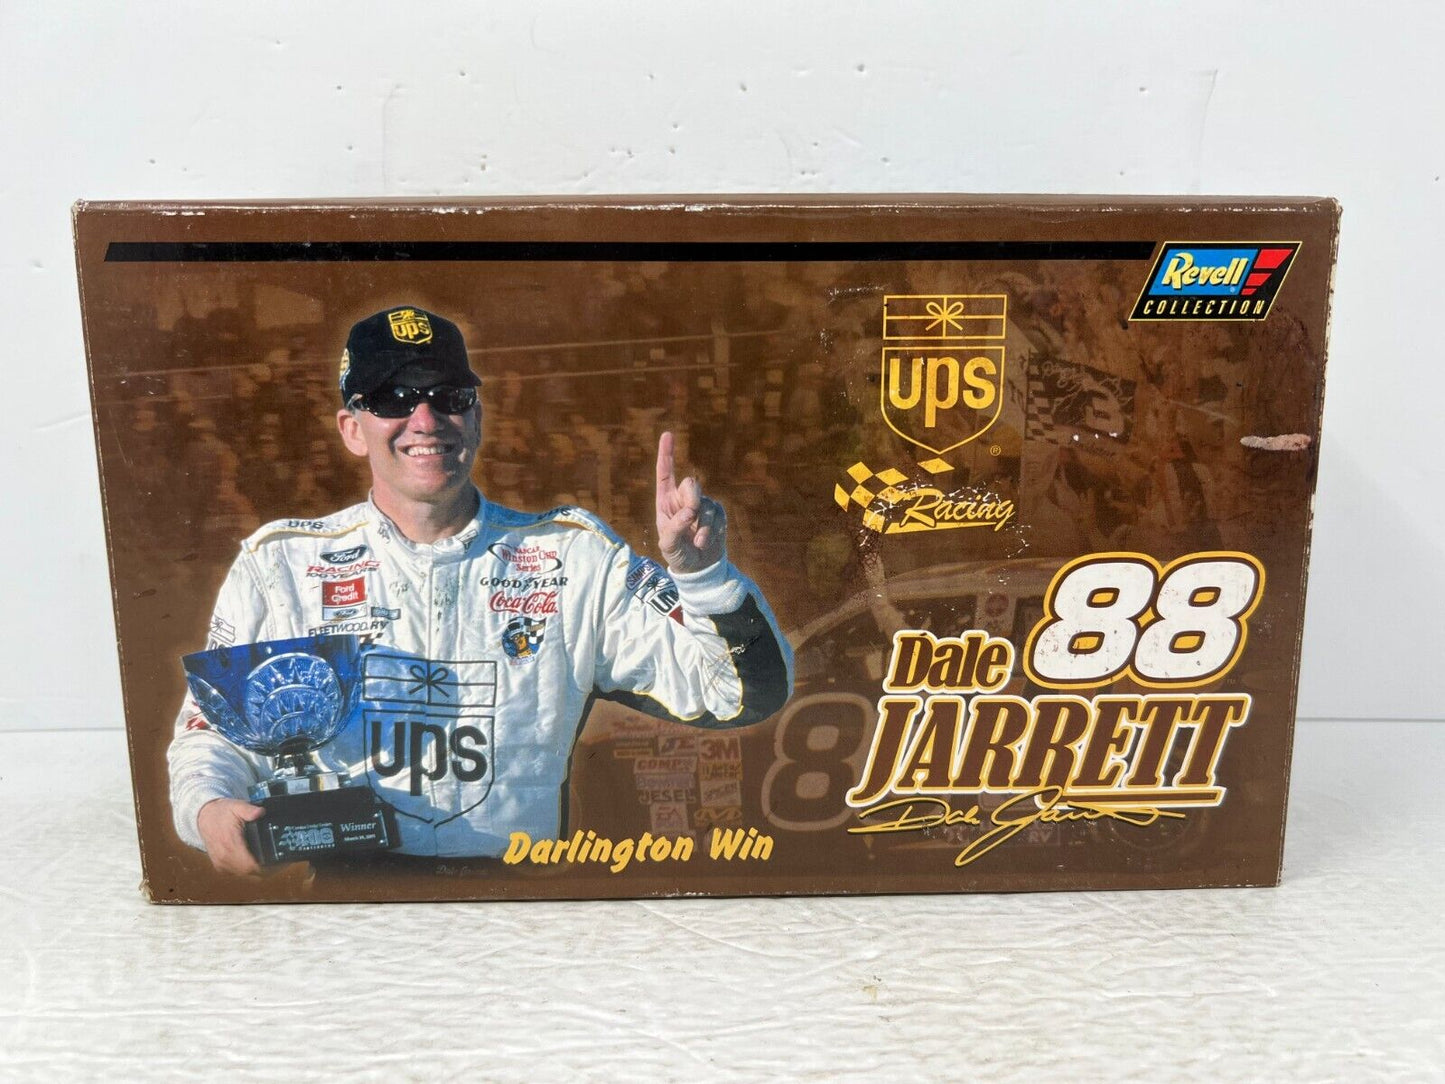 Revell Nascar #88 Dale Jarrett UPS Darlington Win 2001 Ford Taurus 1:24 Diecast